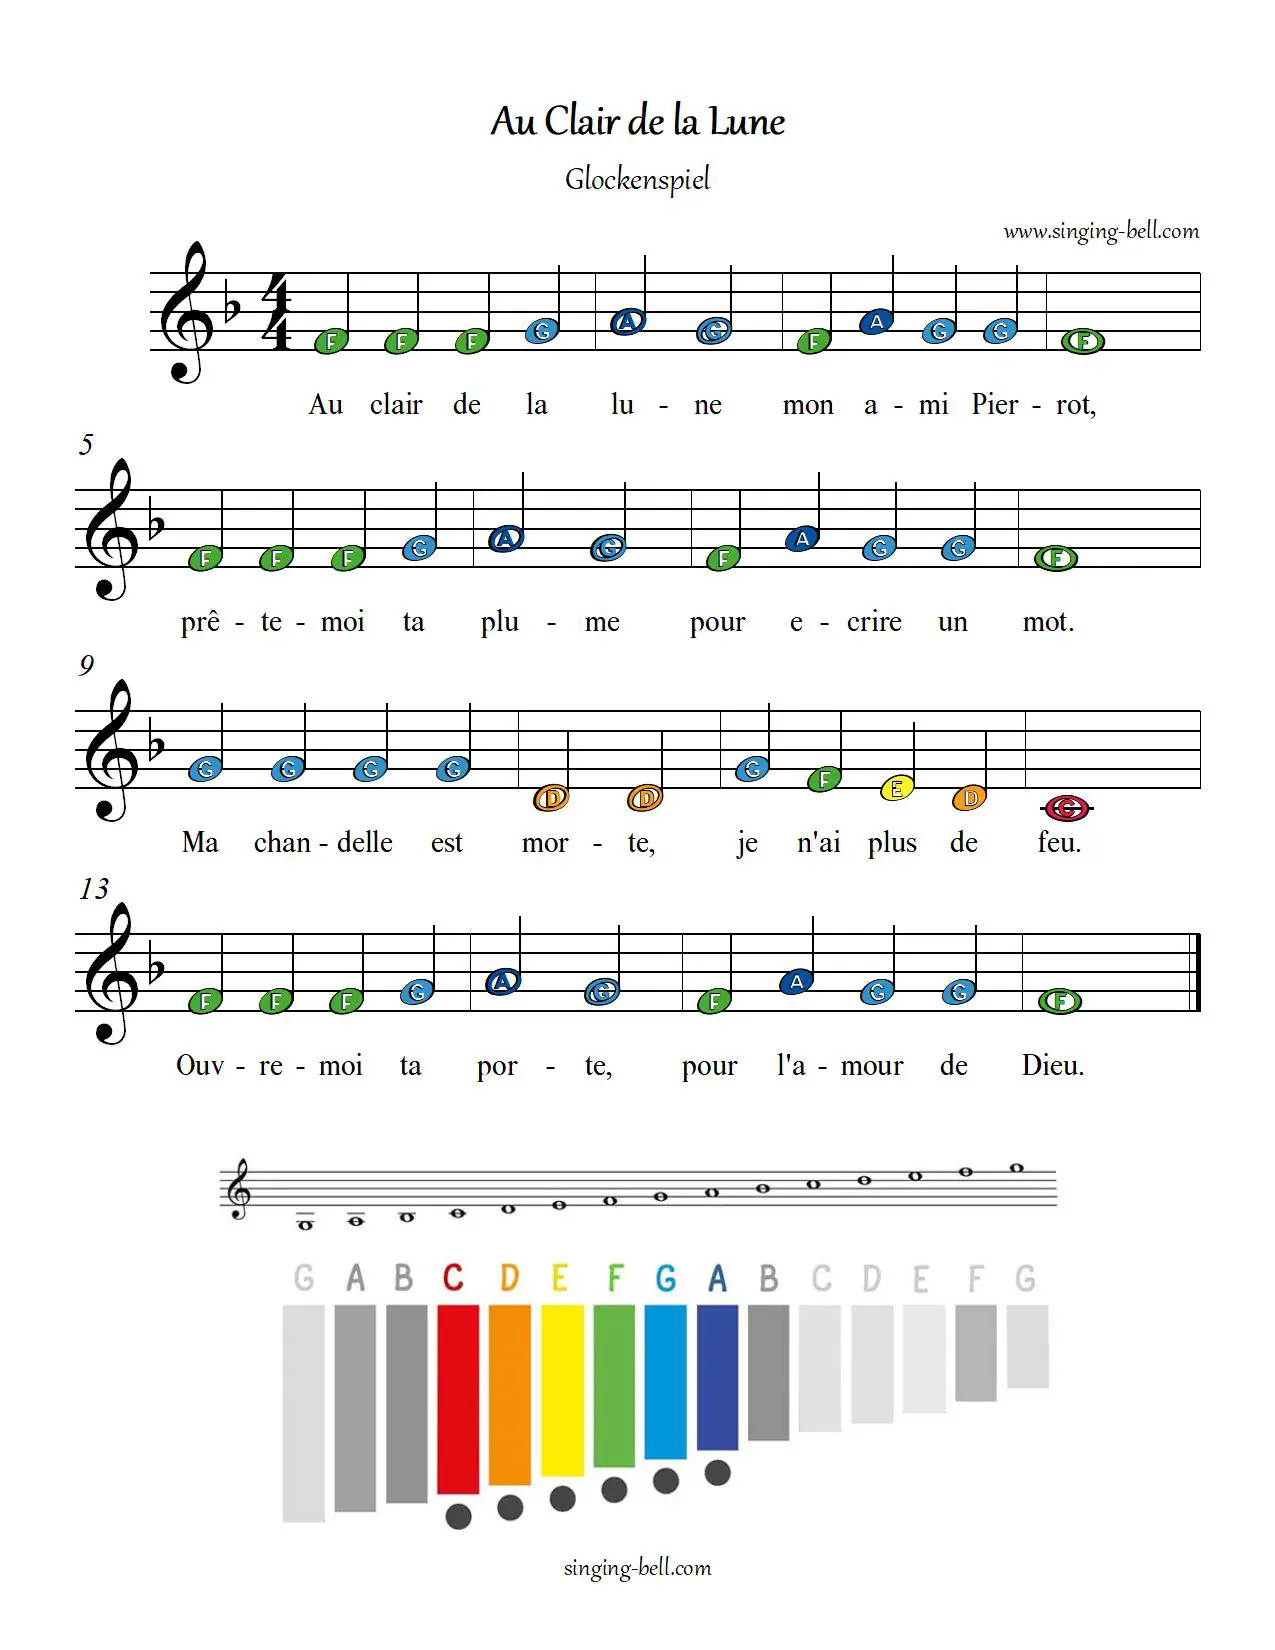 Au clair de la lune free xylophone glockenspiel sheet music color notes chart pdf